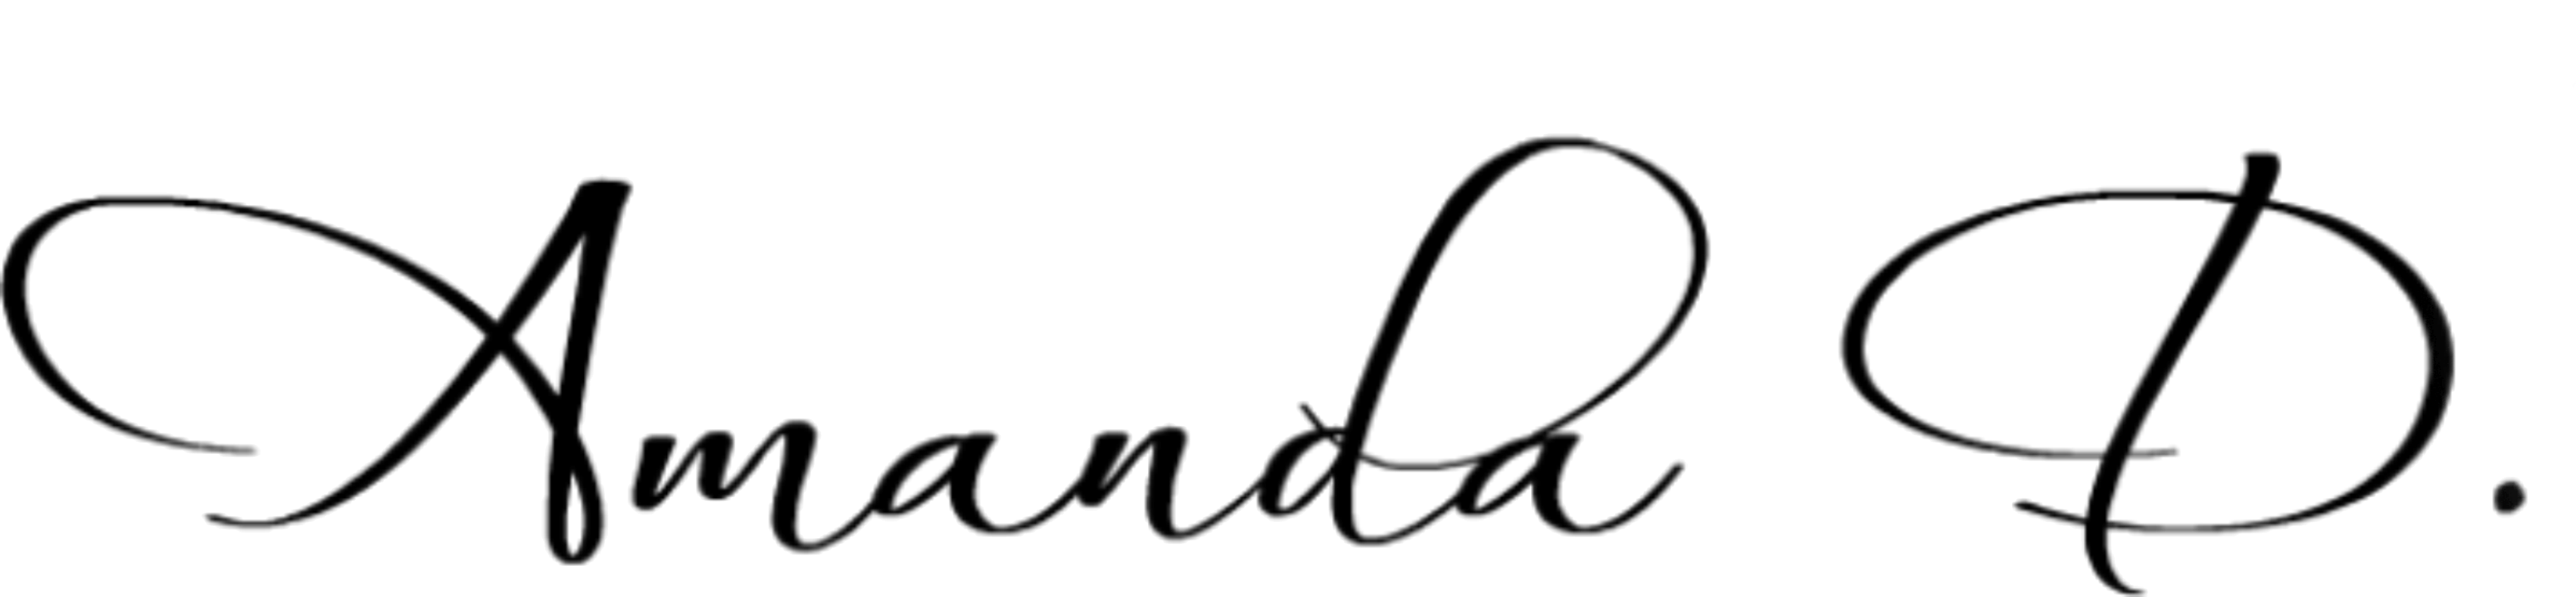 Lightworker Klubben logo